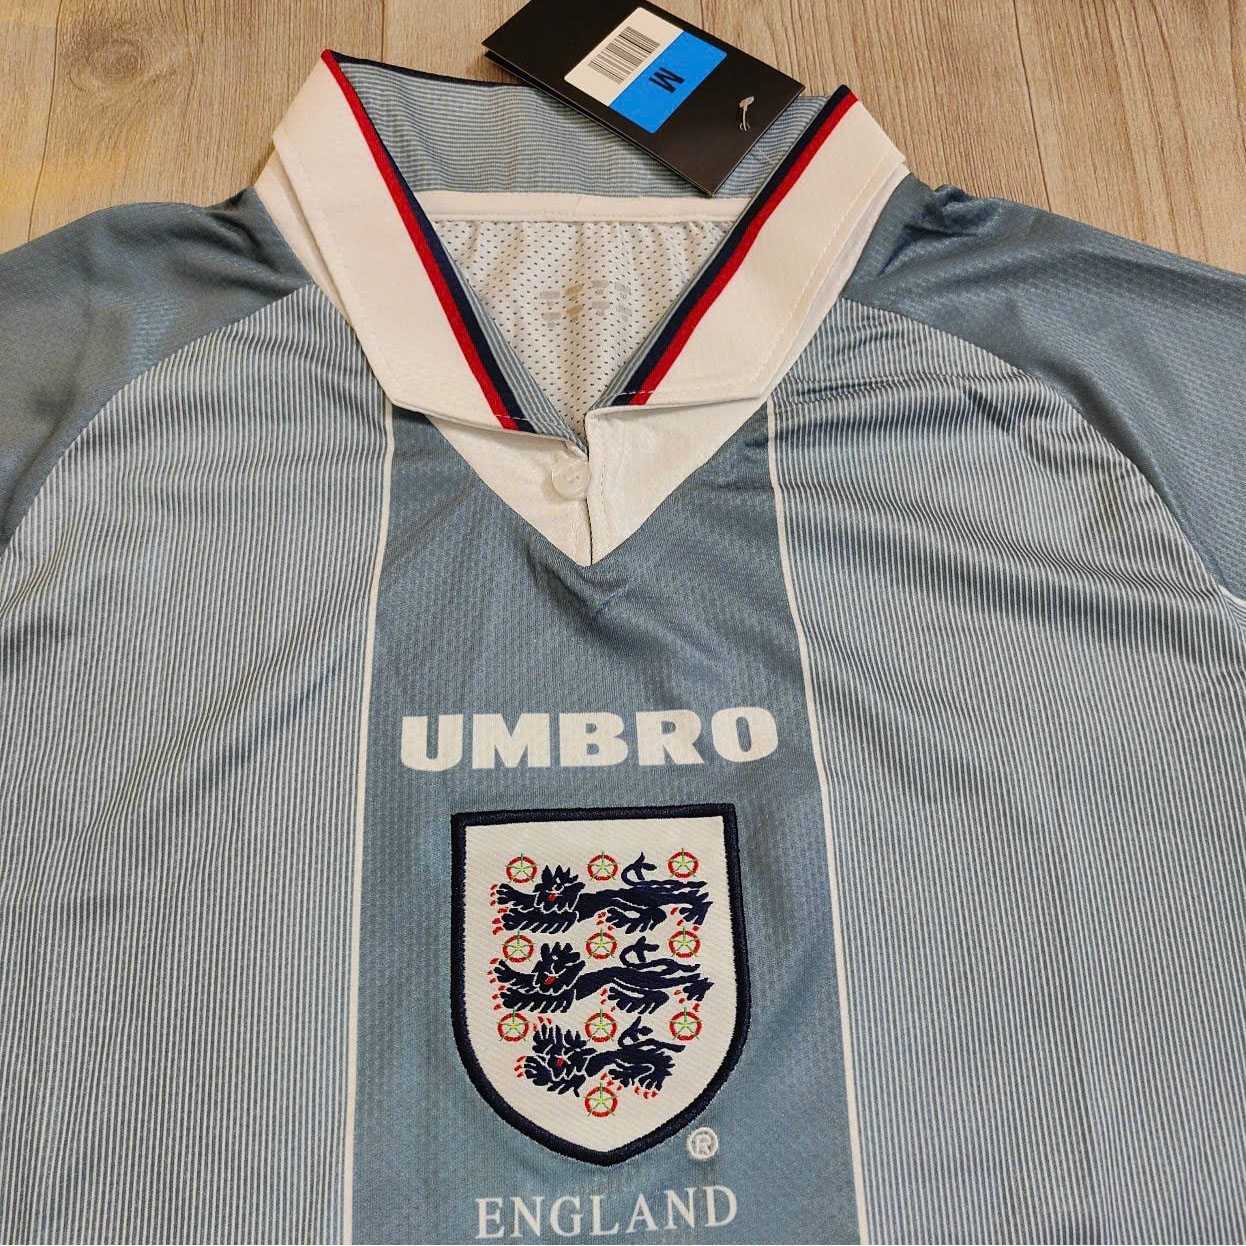 Bộ quần áo đá bóng đội tuyển anh enland umbro kỷ niệm năm 1998 màu trắng đỏ xám xanh quần có túi